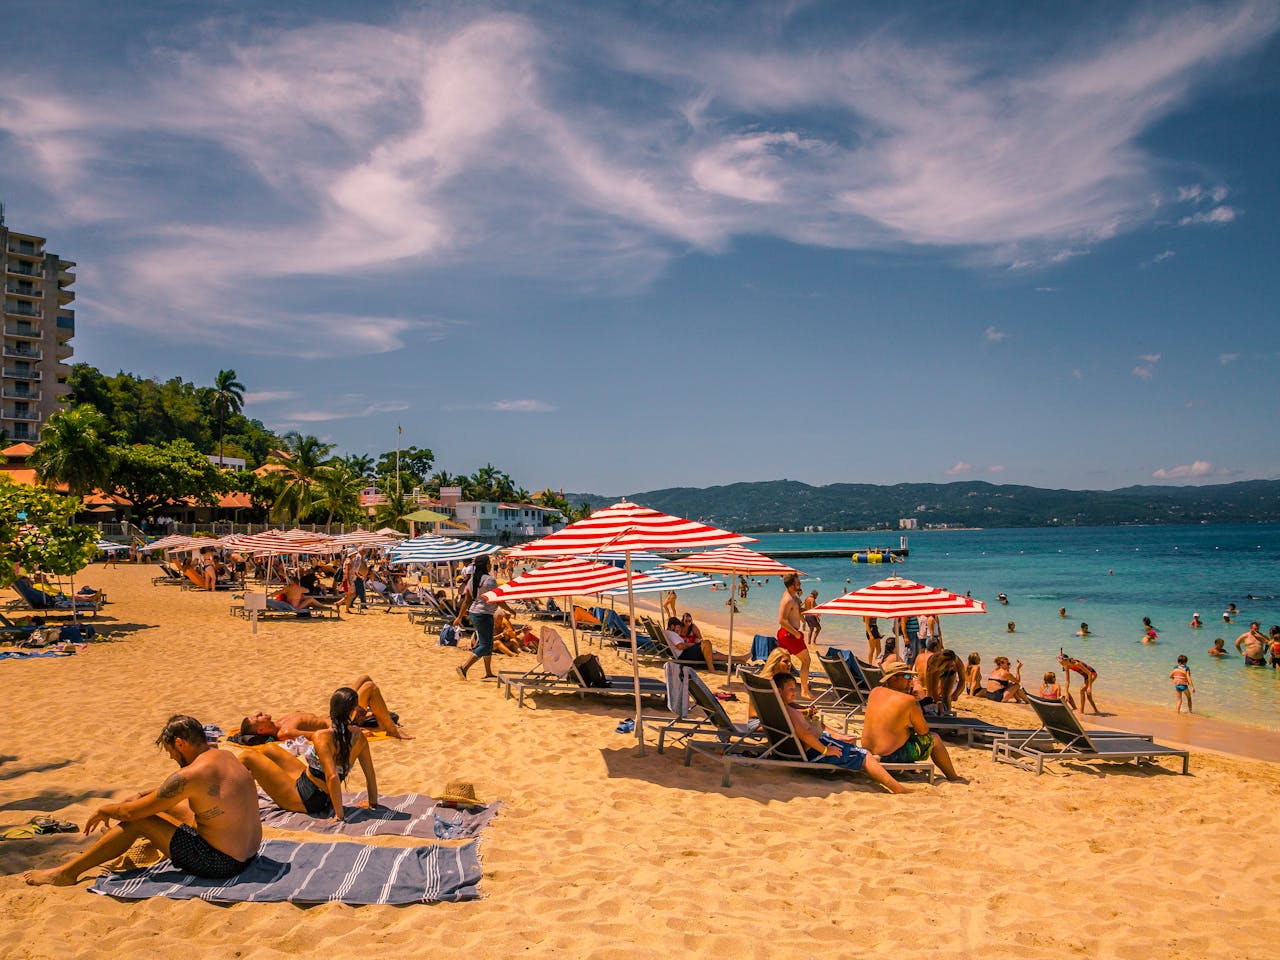 pexels 67117688 18395254 - De Salvador a Florianópolis: las playas más populares de Brasil